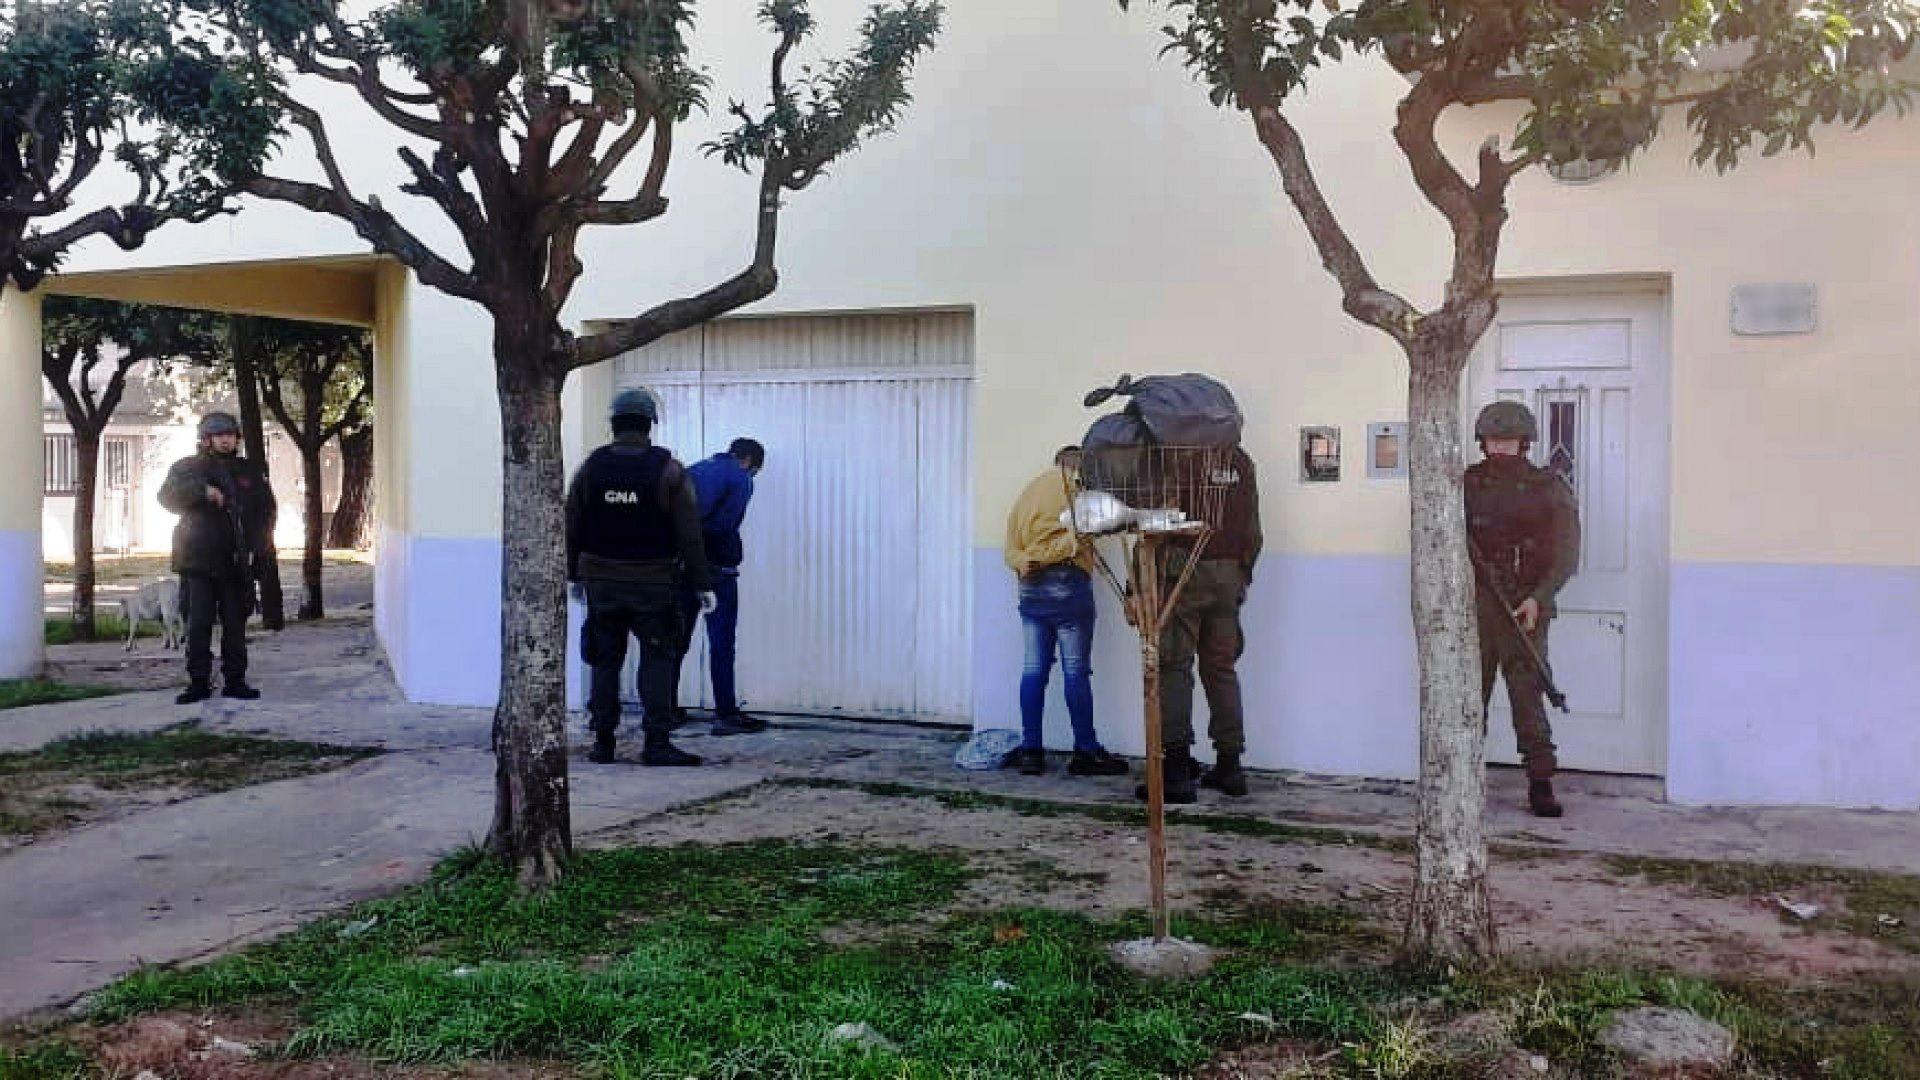 Tocoacute perder- robaron a mano armada y a los pocos minutos fueron detenidos por Gendarmeriacutea